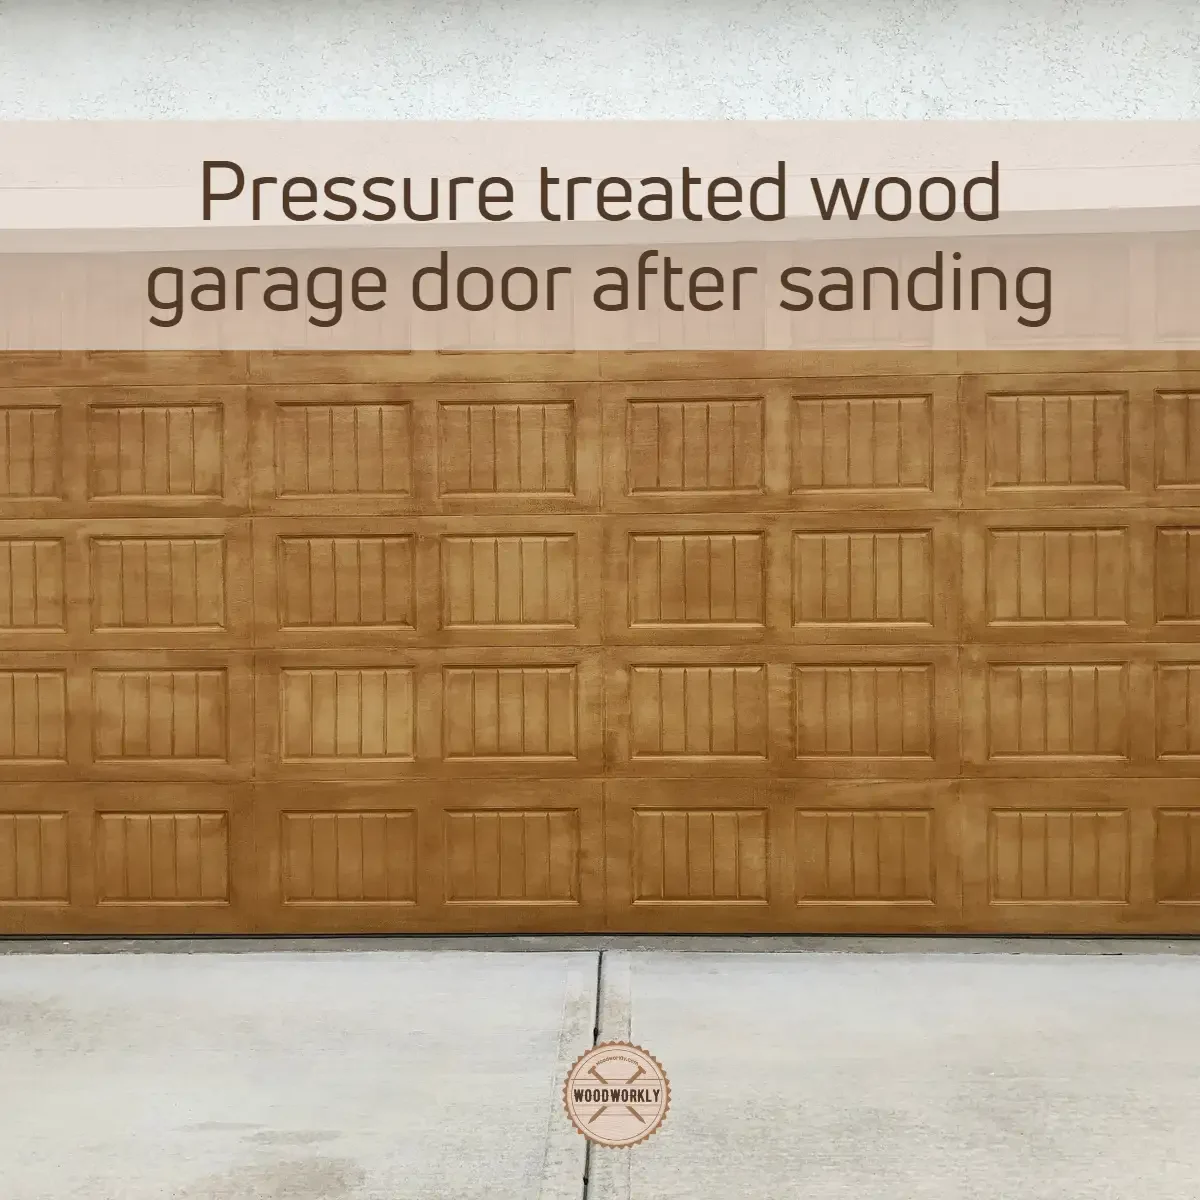 Pressure treated wood garage door after sanding